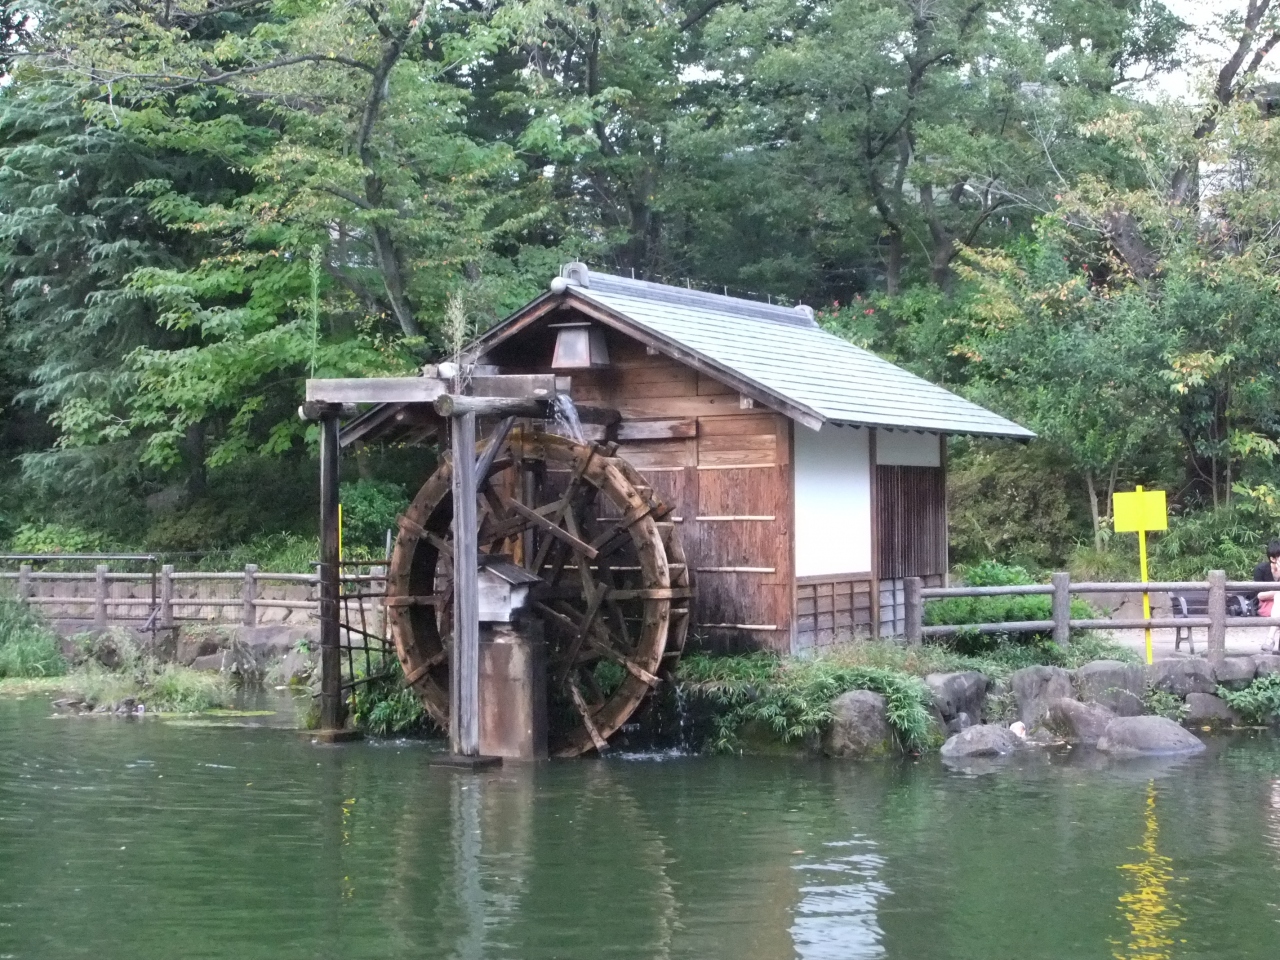 水車が廻っていた鍋島松濤公園の秋 渋谷 東京 の旅行記 ブログ By Rspさん フォートラベル